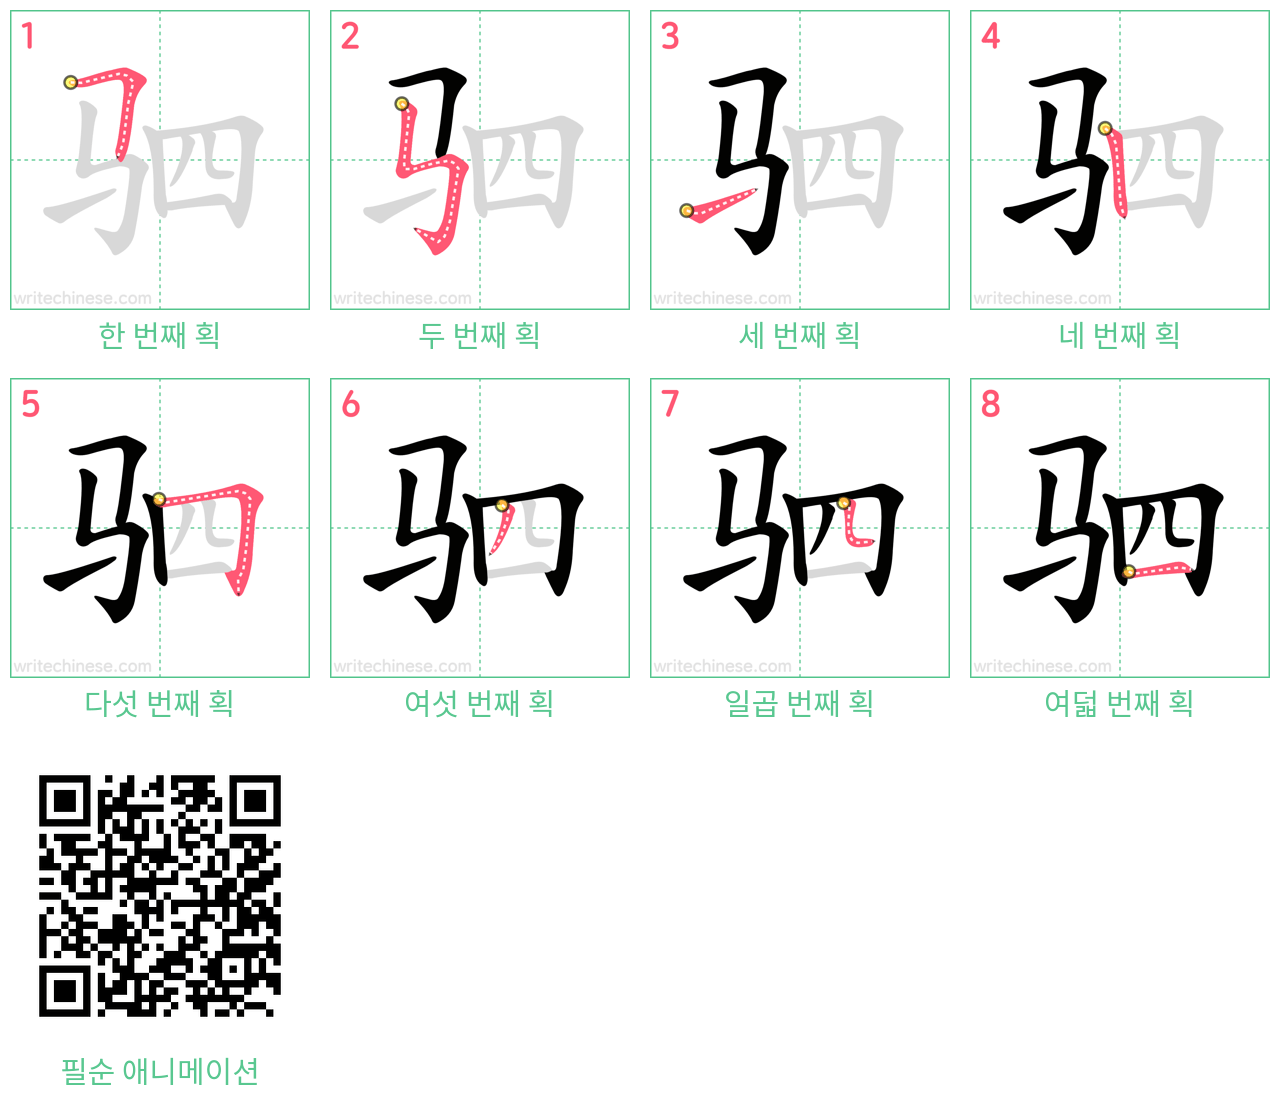 驷 step-by-step stroke order diagrams